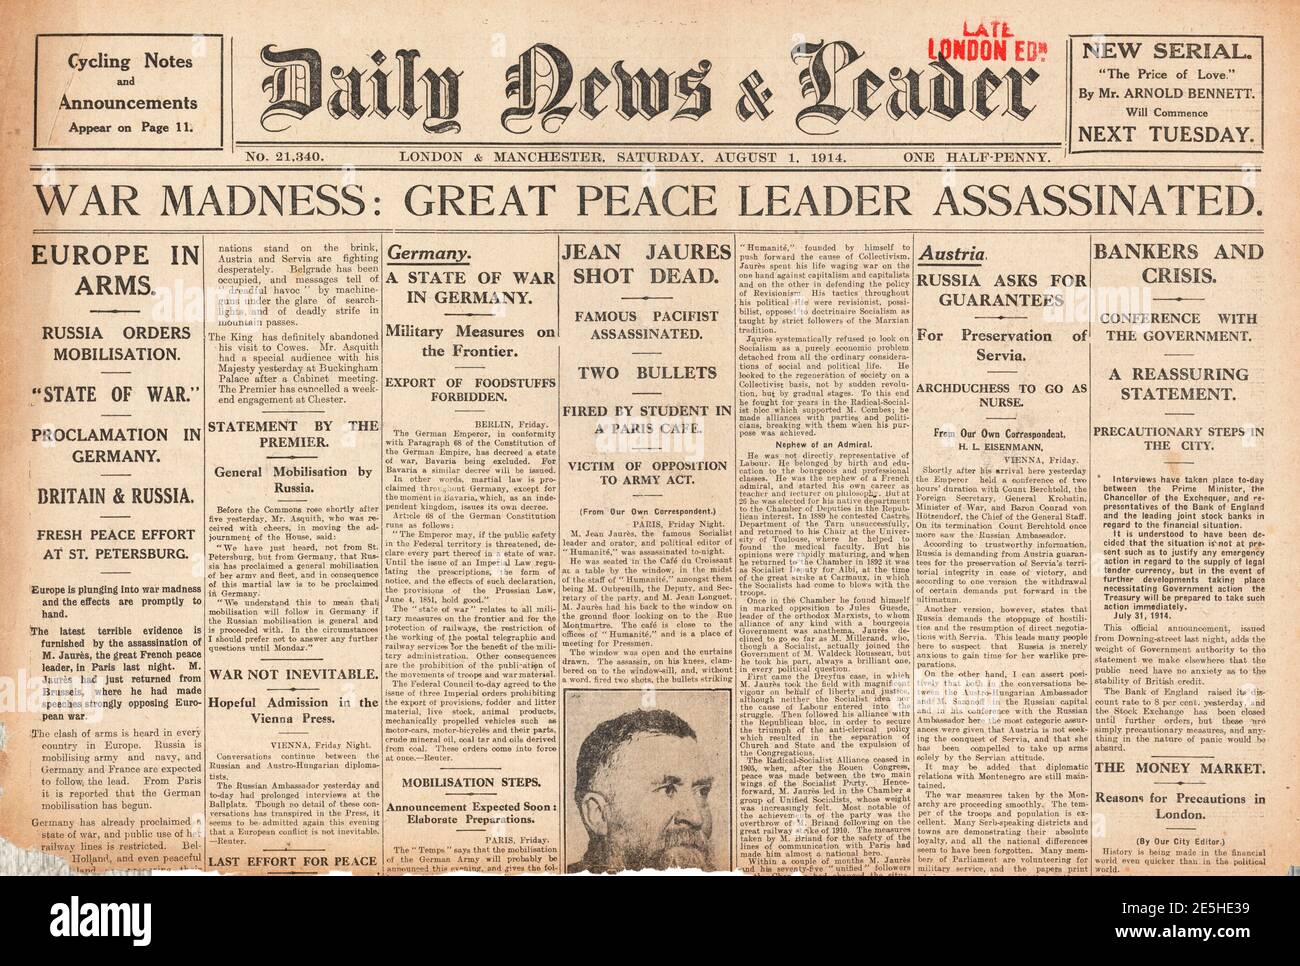 1914 nouvelles quotidiennes assassinat de Jean Jaurès Photo Stock - Alamy